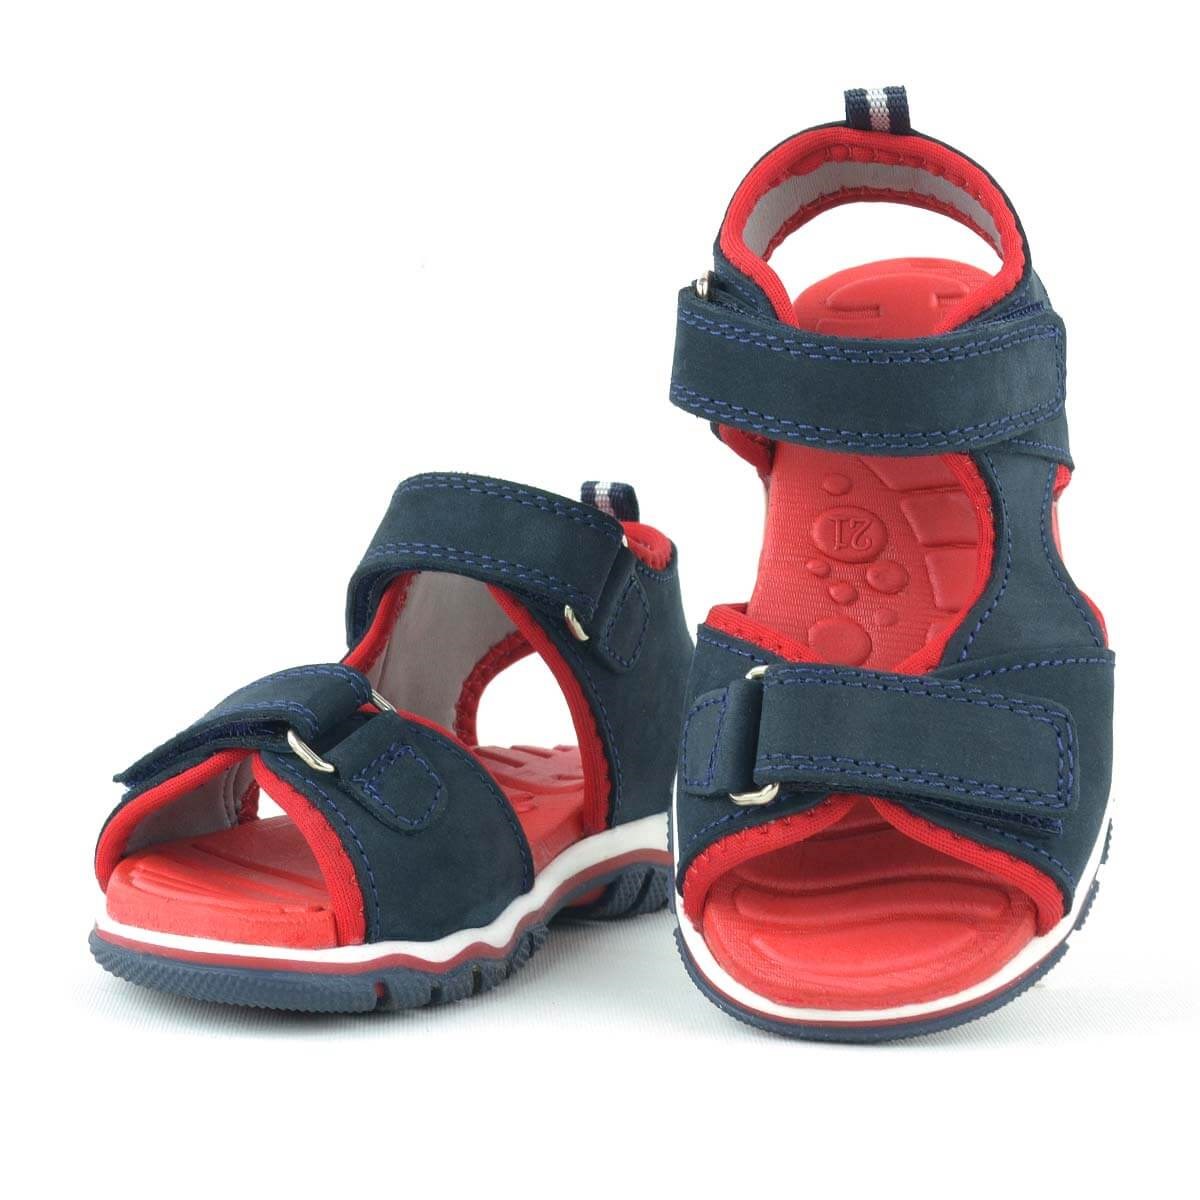 Rakerplus Hakiki Deri Lacivert Cırtlı Bebek Sandaletleri